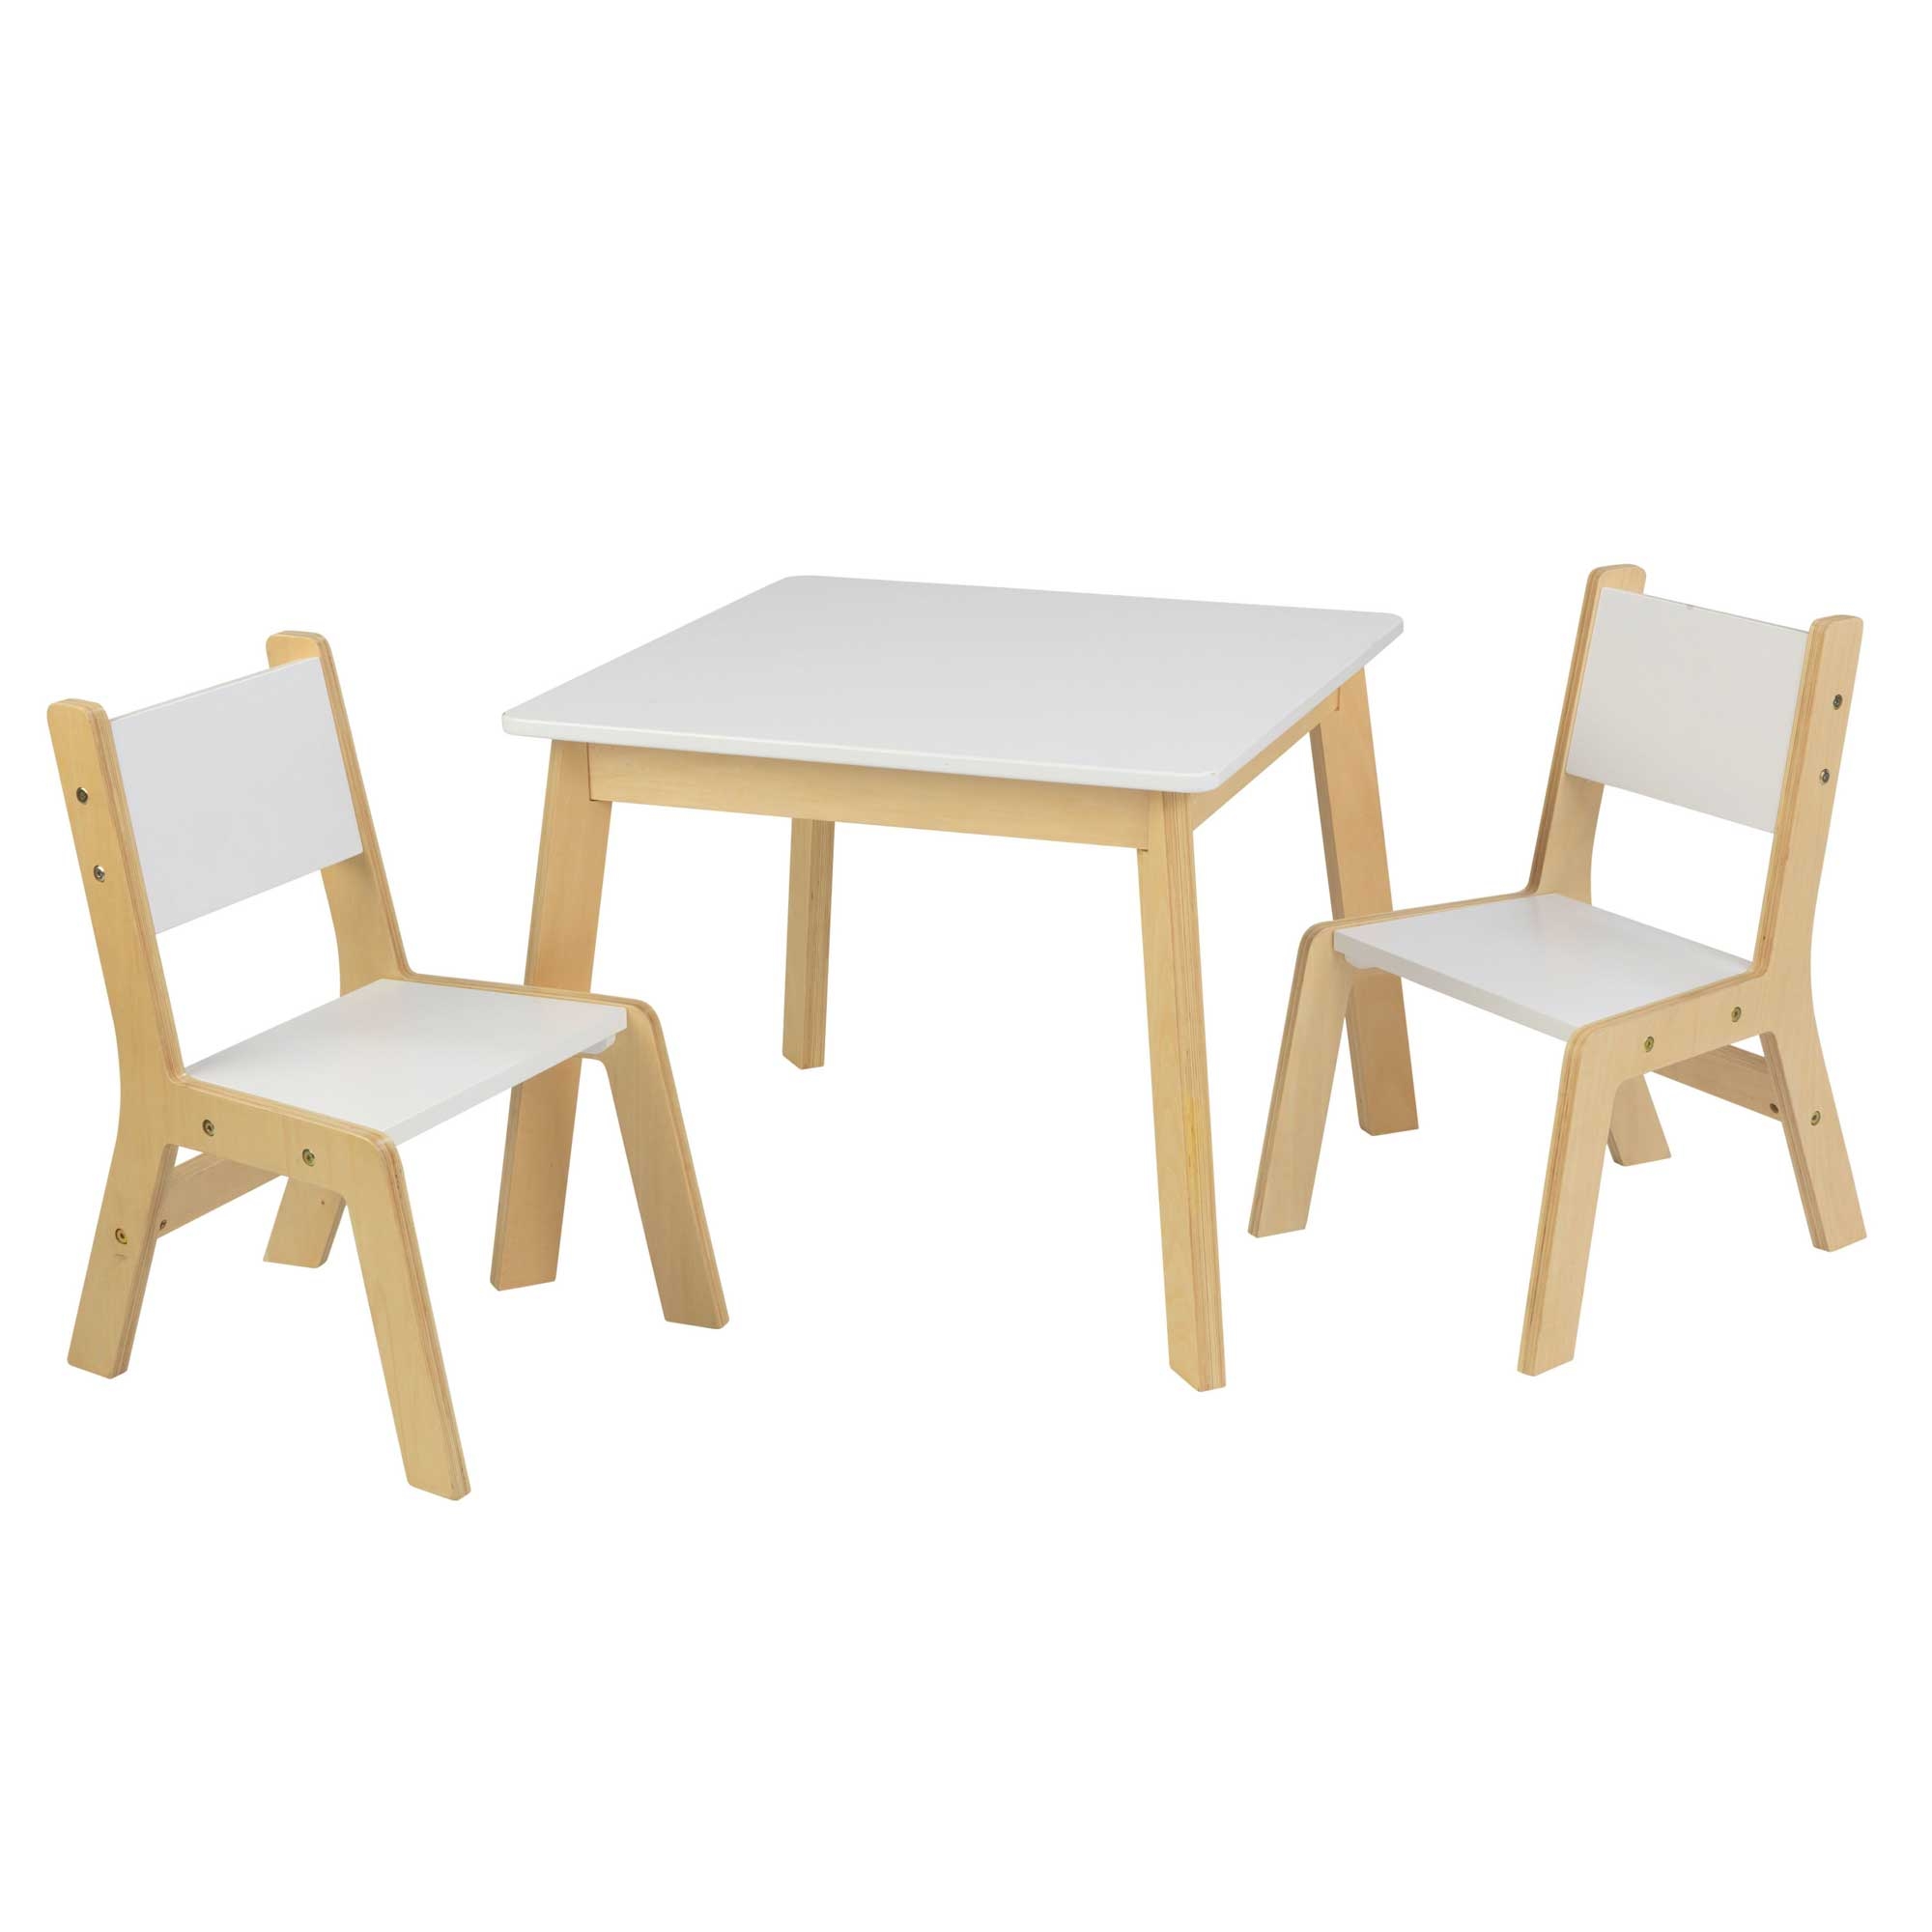 Table et chaises modernes blanches et bois naturel pour enfant